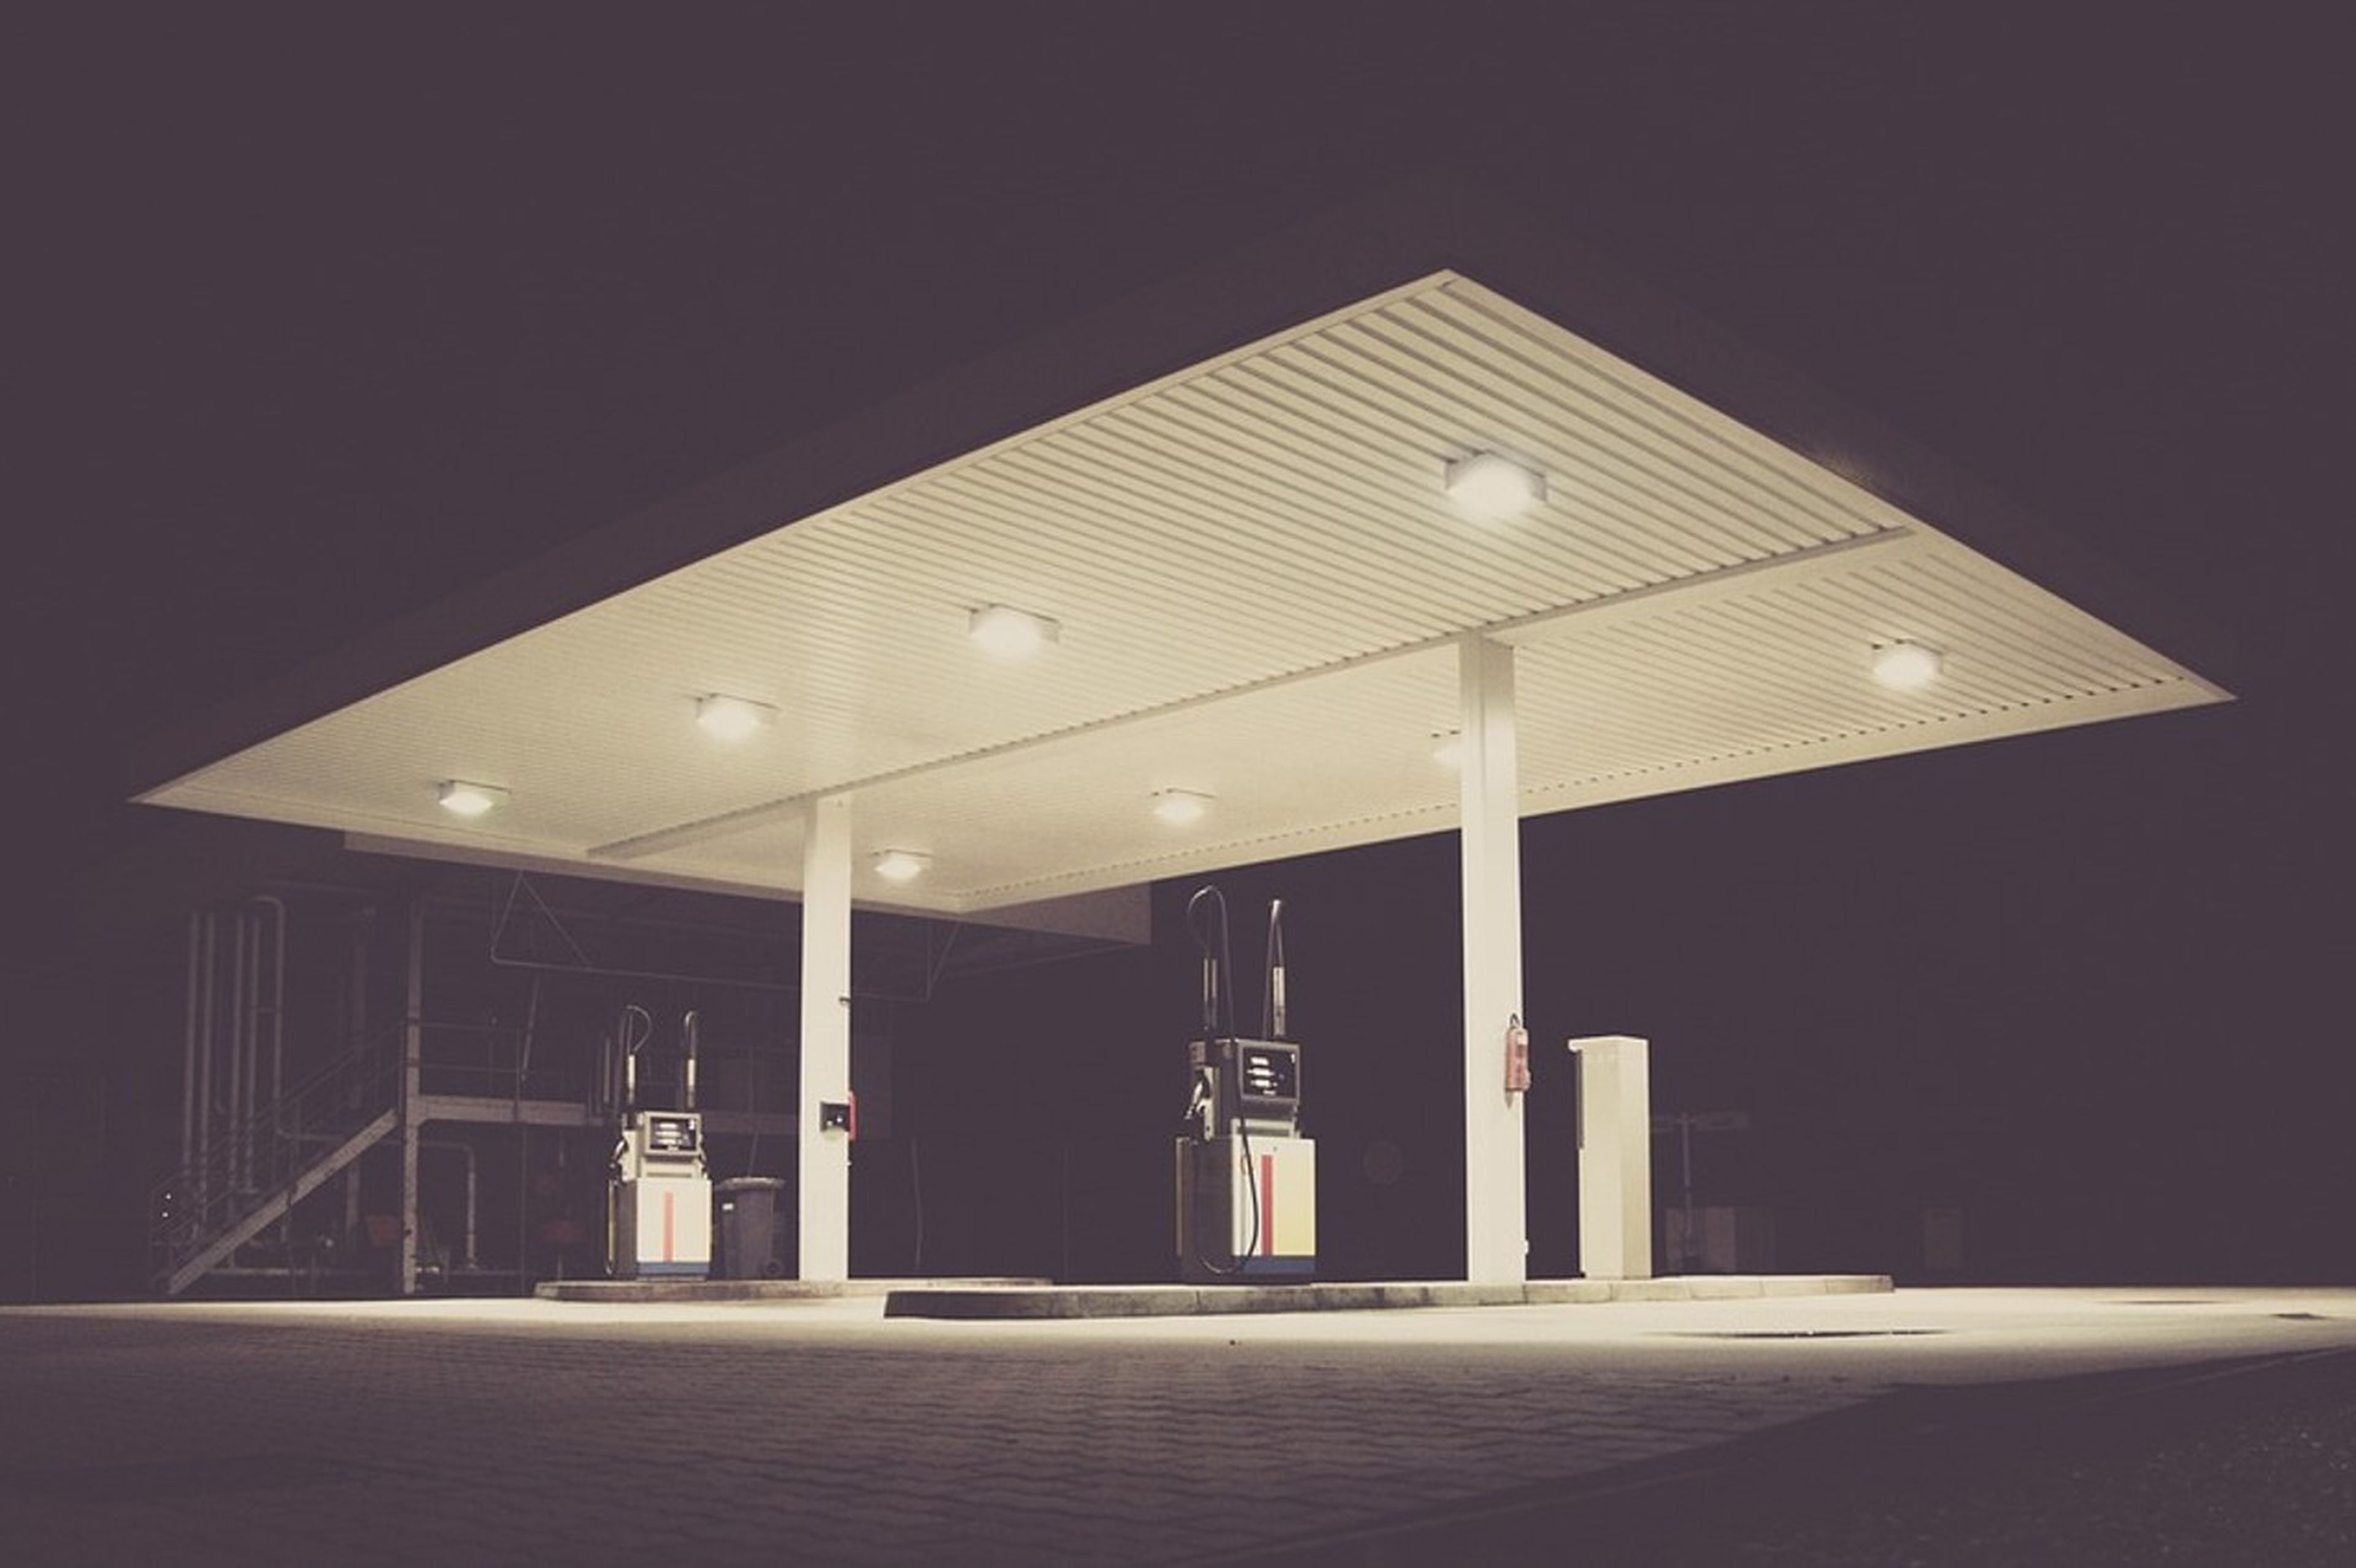 Las ayudas del Gobierno de Francia hunden el negocio de las gasolineras españolas en la frontera